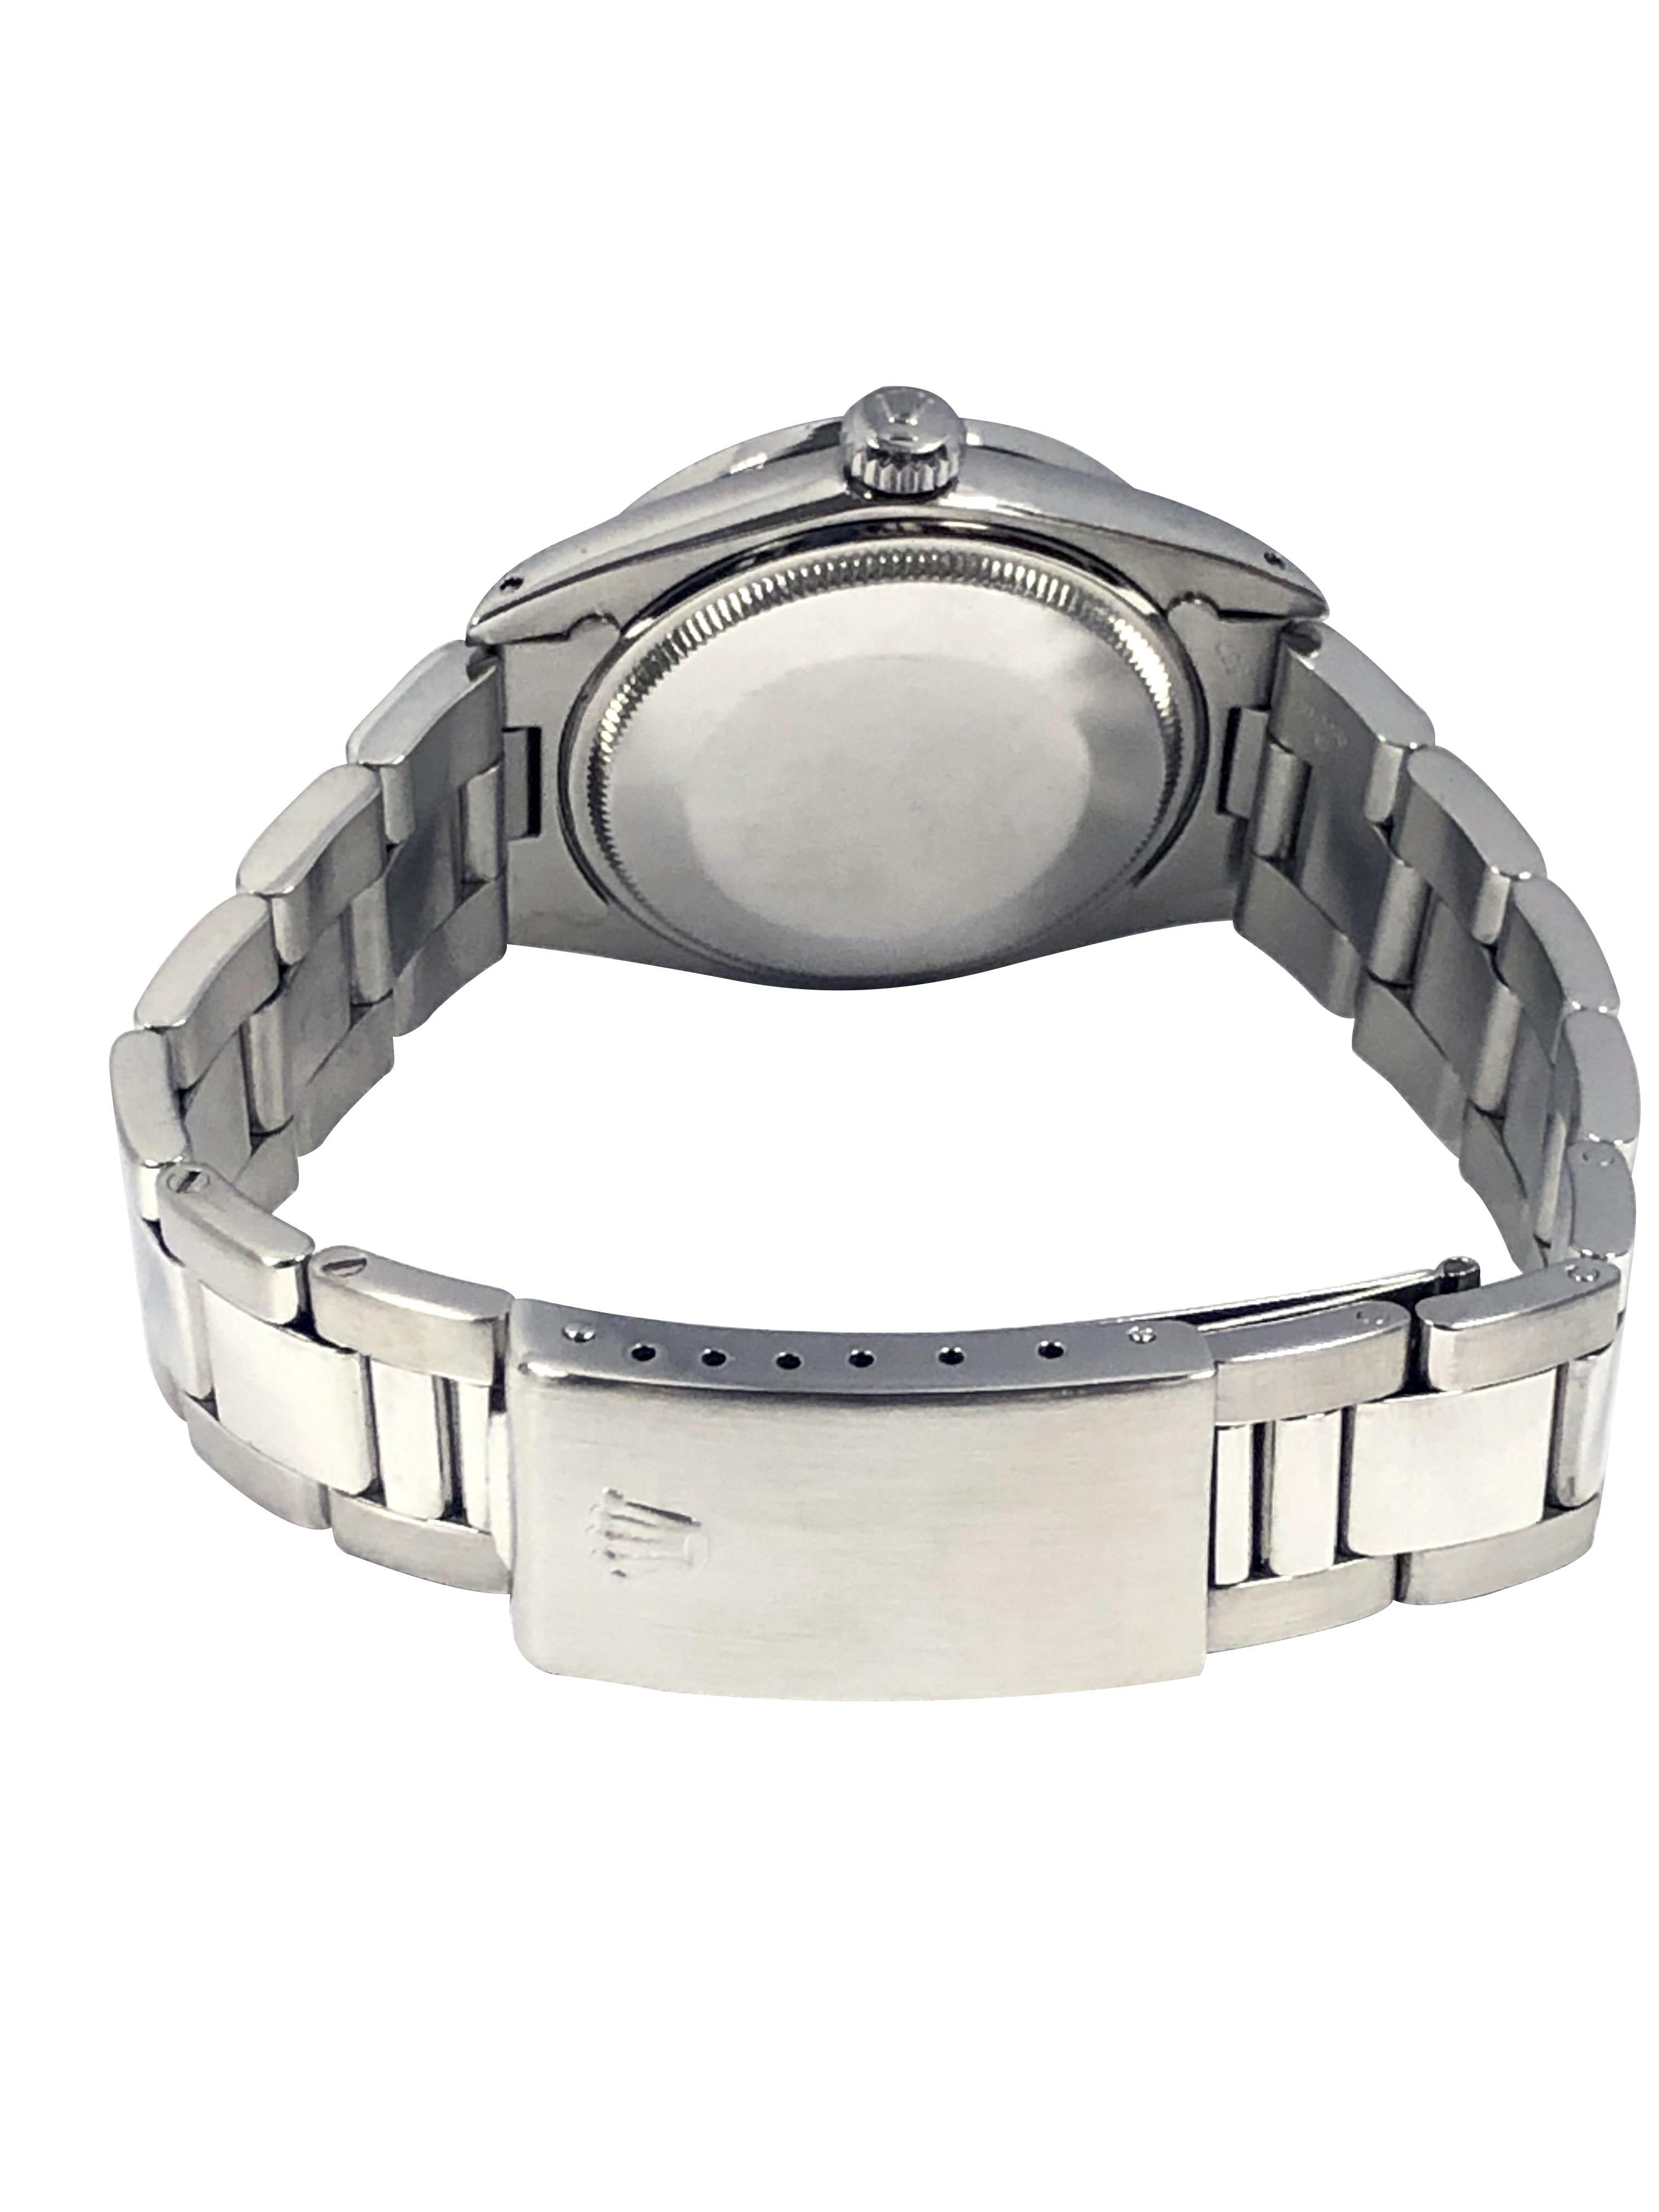 Women's or Men's Rolex Vintage Steel Date Model 1501 Black Dial Wrist Watch For Sale